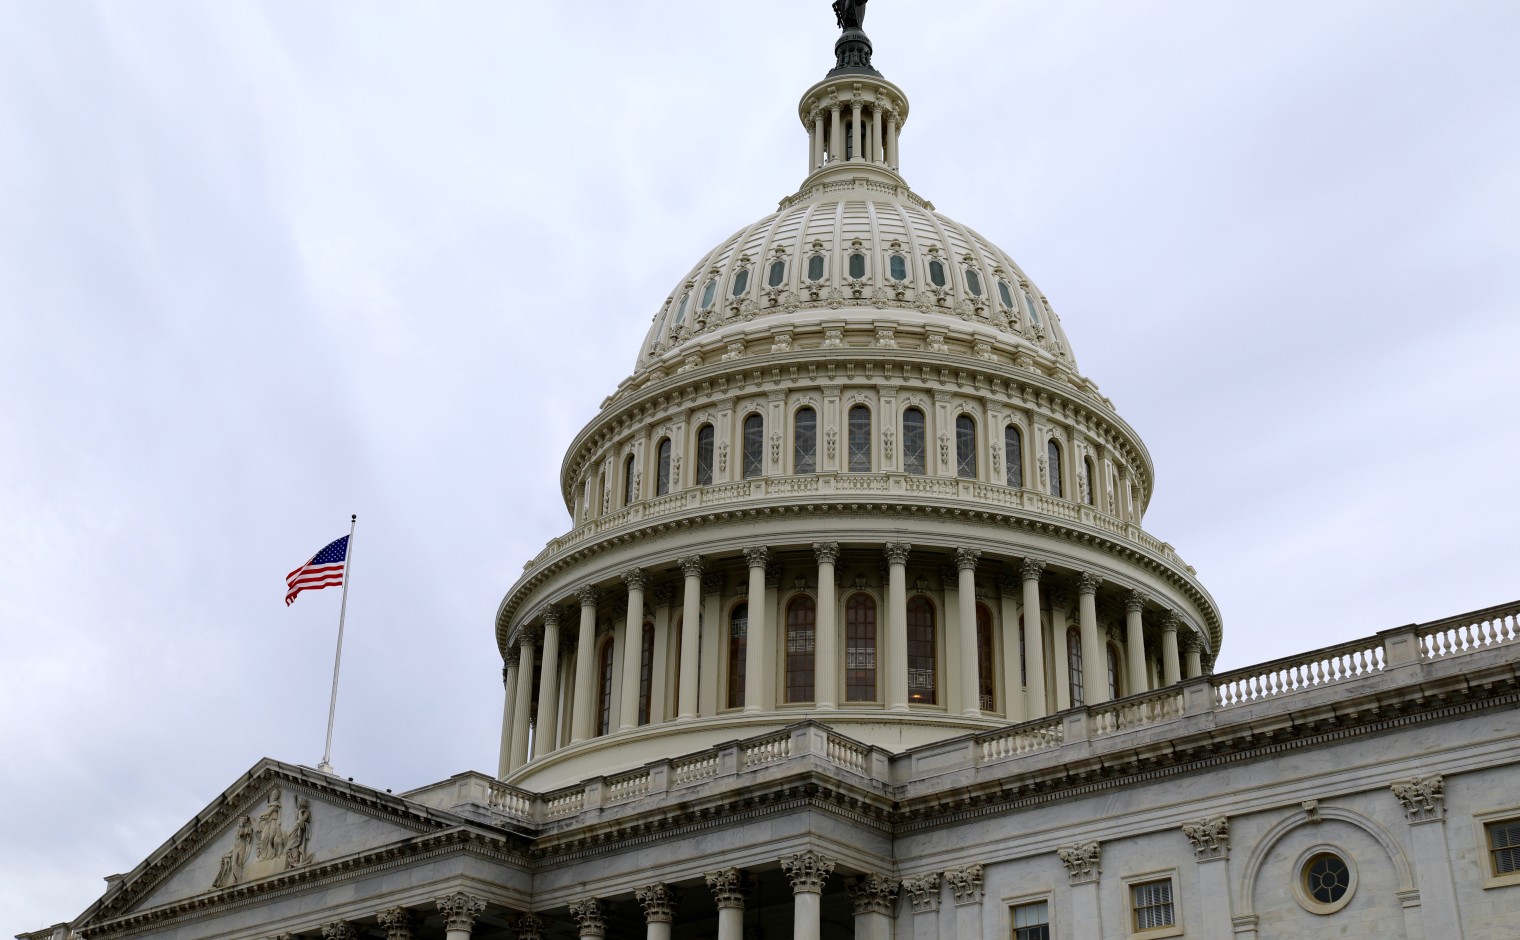 De Amerikaanse Senaat huisvest in het Capitool in Washington.